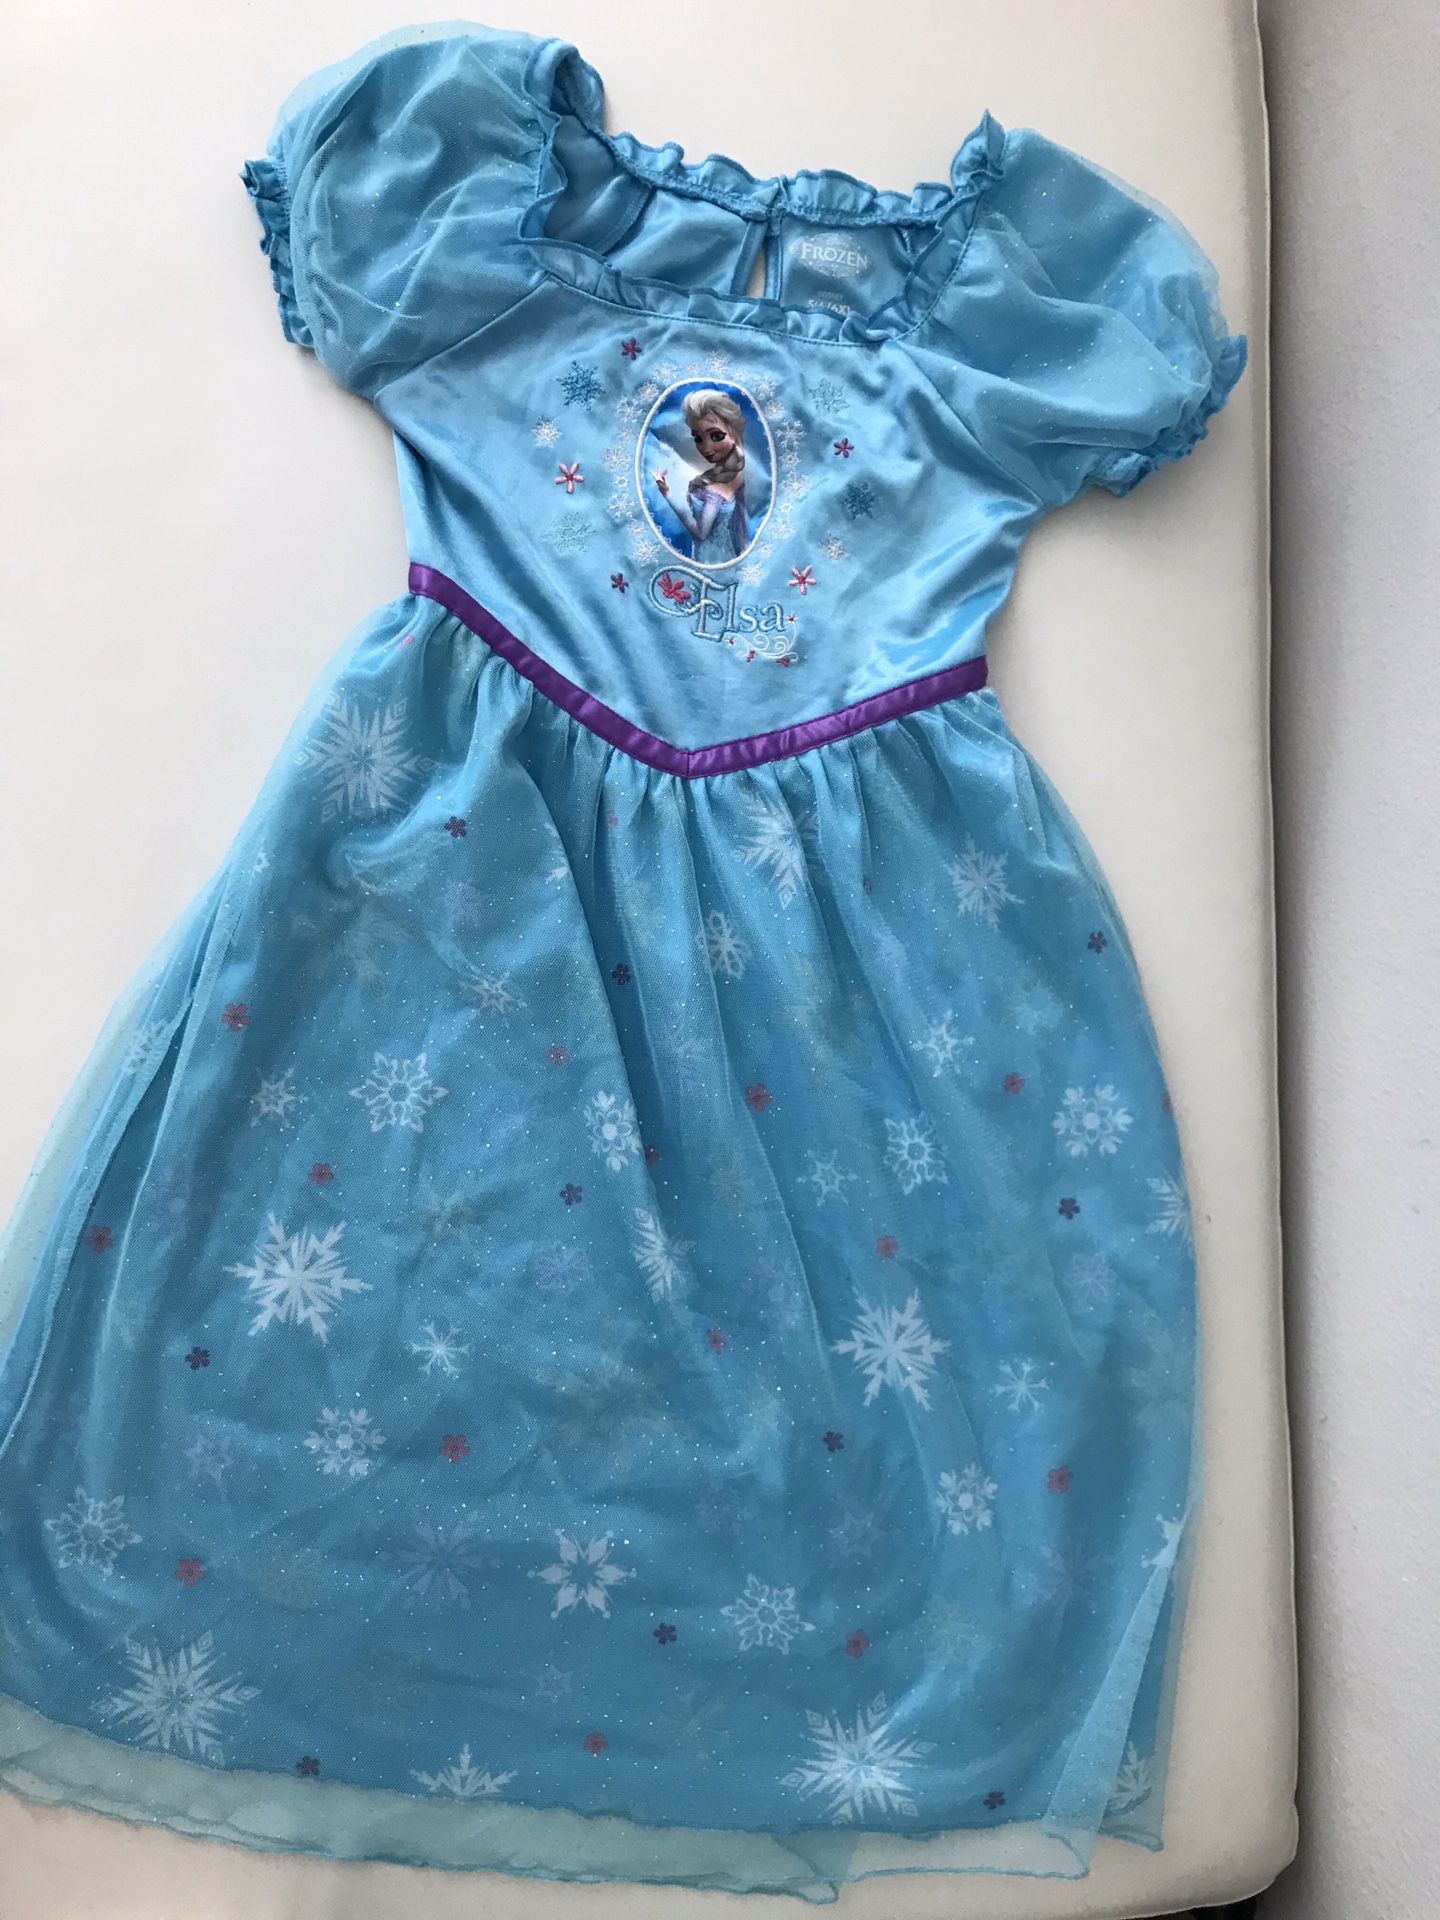 Disney Frozen Elsa dress size S 6-6X